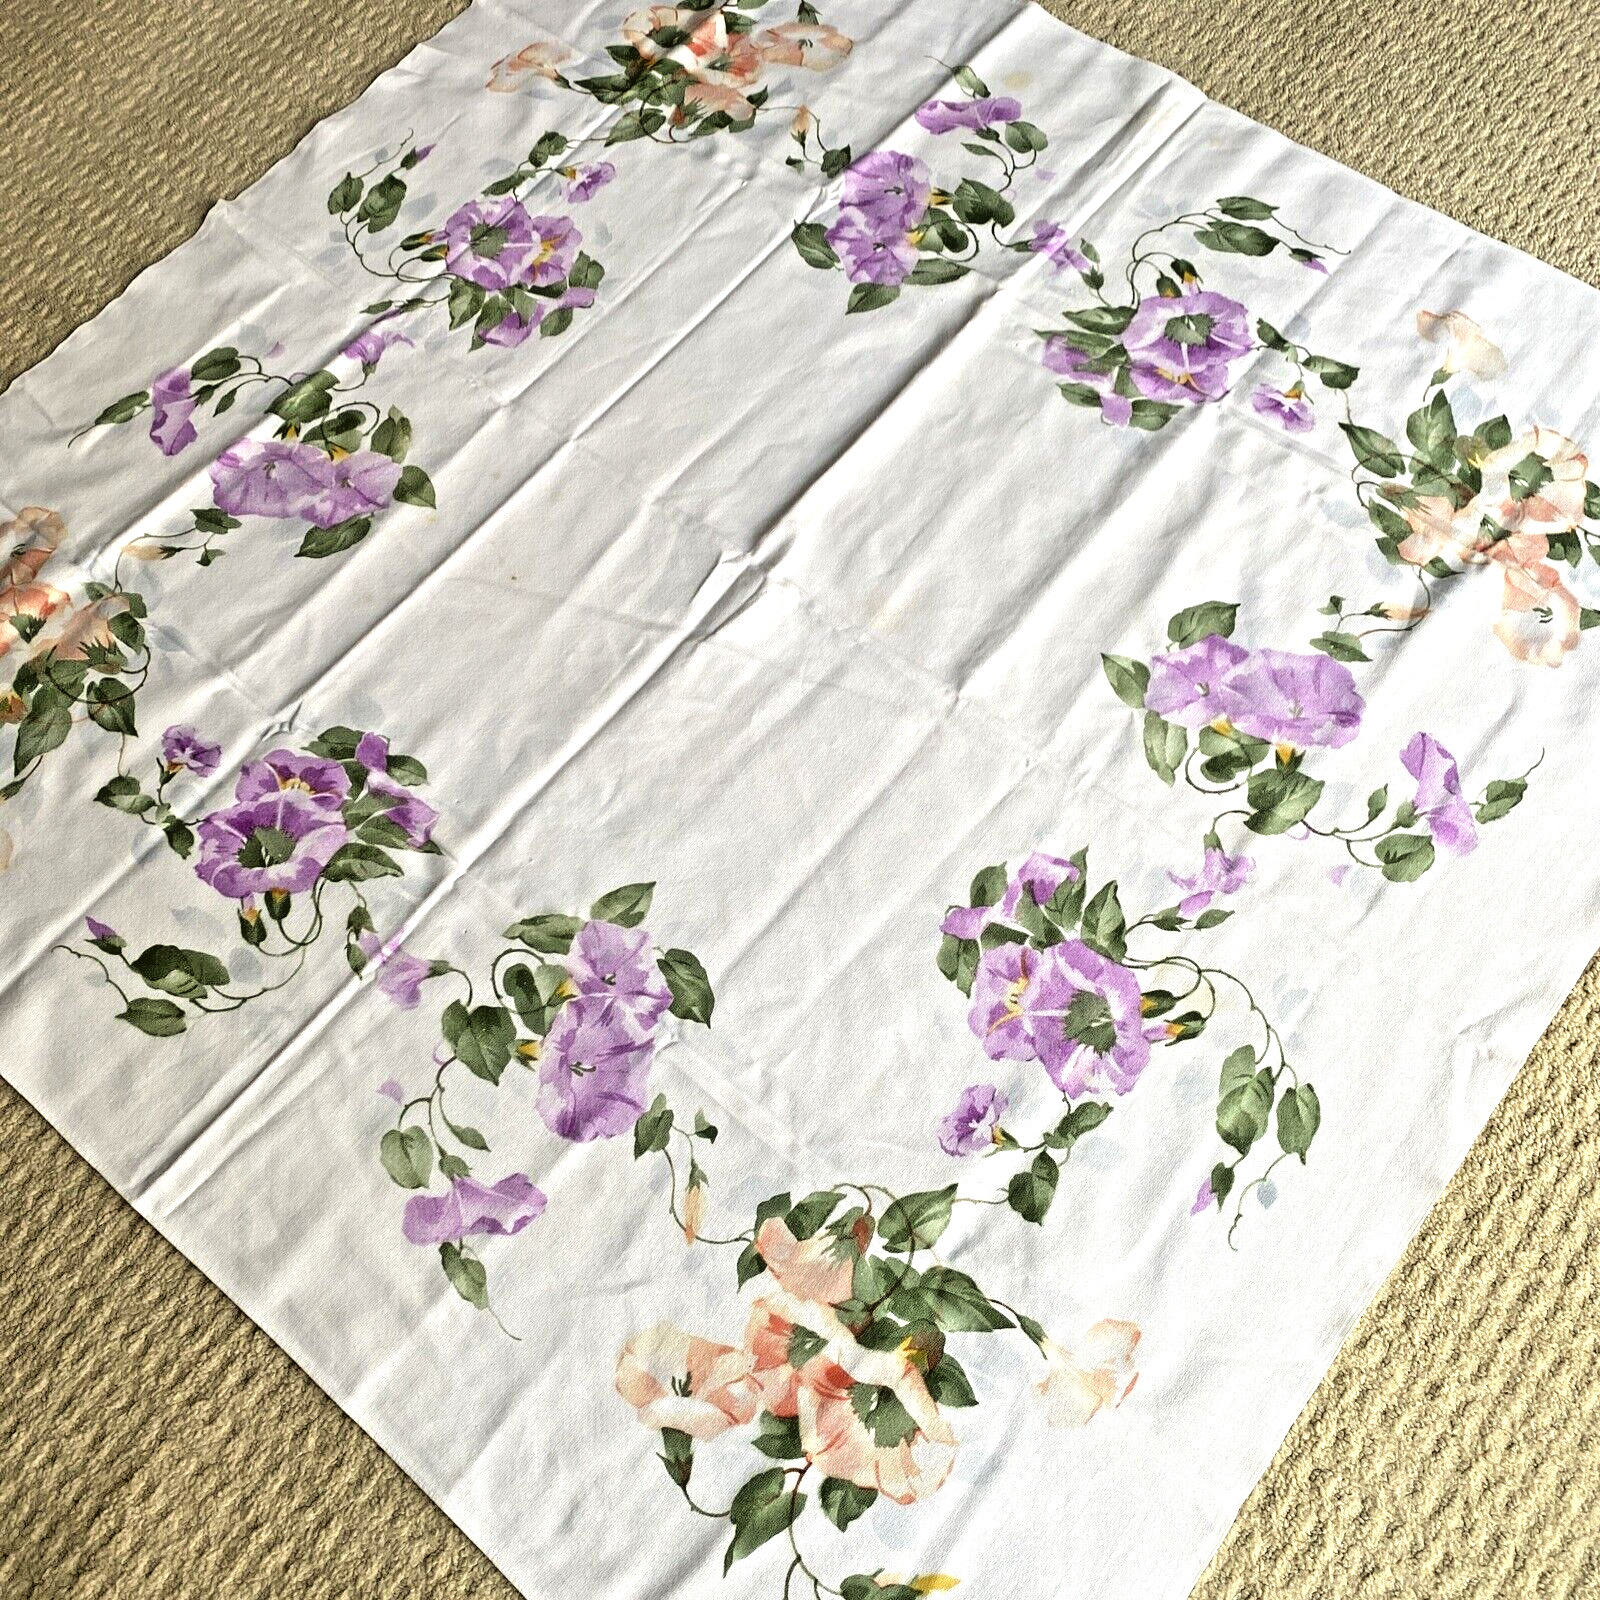 VTG Cotton Tablecloth Cottage Floral Morning Glory Florak Border Peach Purple